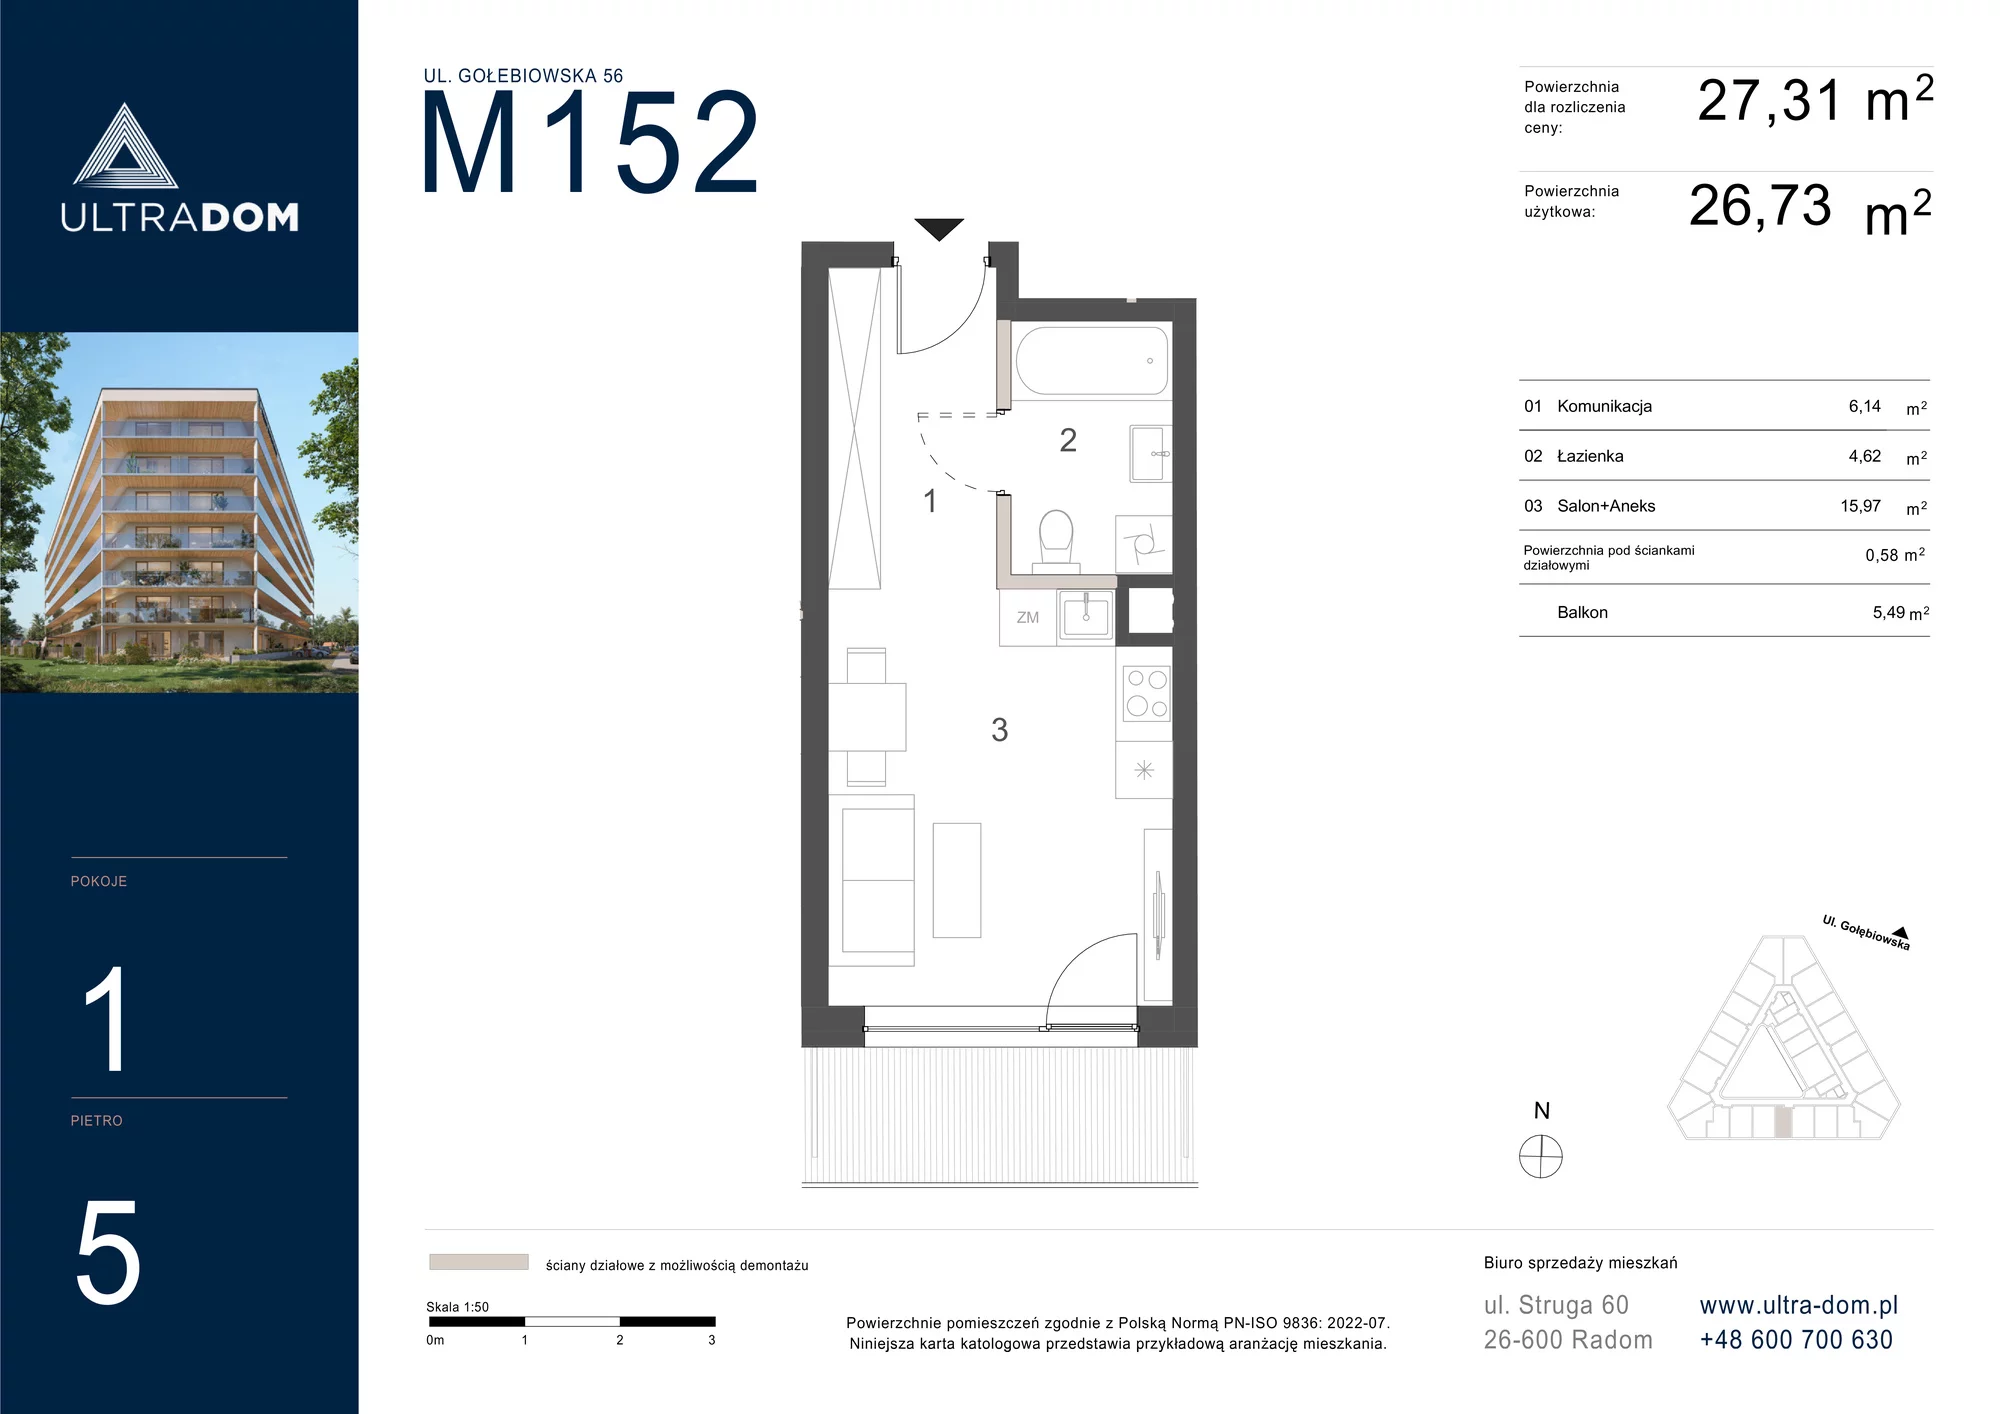 Mieszkanie 27,31 m², piętro 5, oferta nr M152, ULTRADOM, Radom, Gołębiów, ul. Gołębiowska